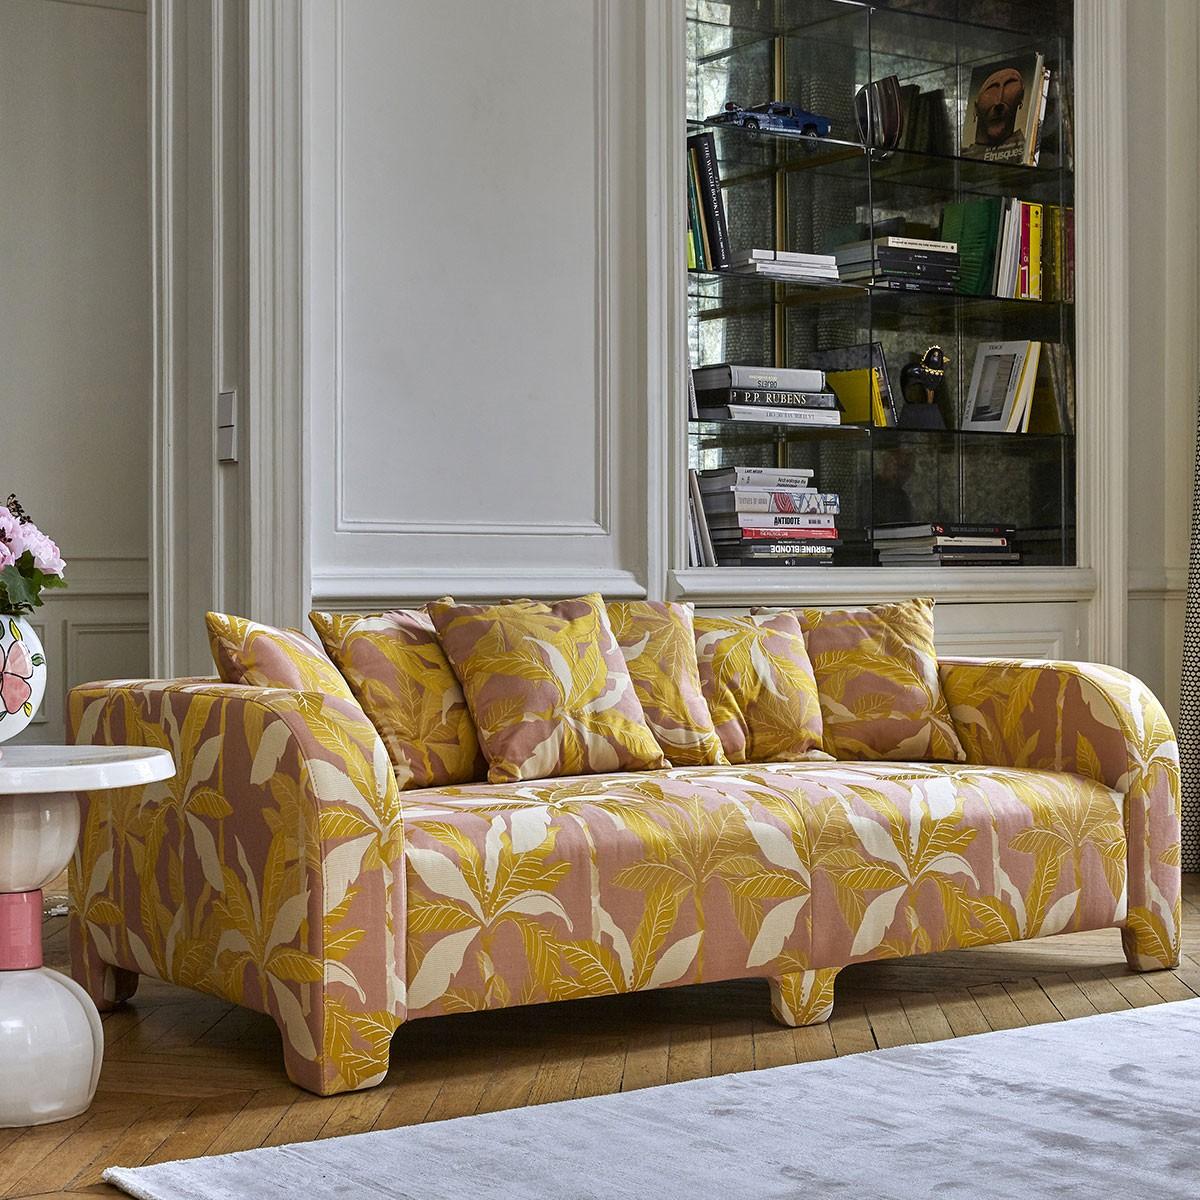 Popus Editions Graziella 3 Seater Sofa in Pink Miami Jacquard Fabric For Sale 4